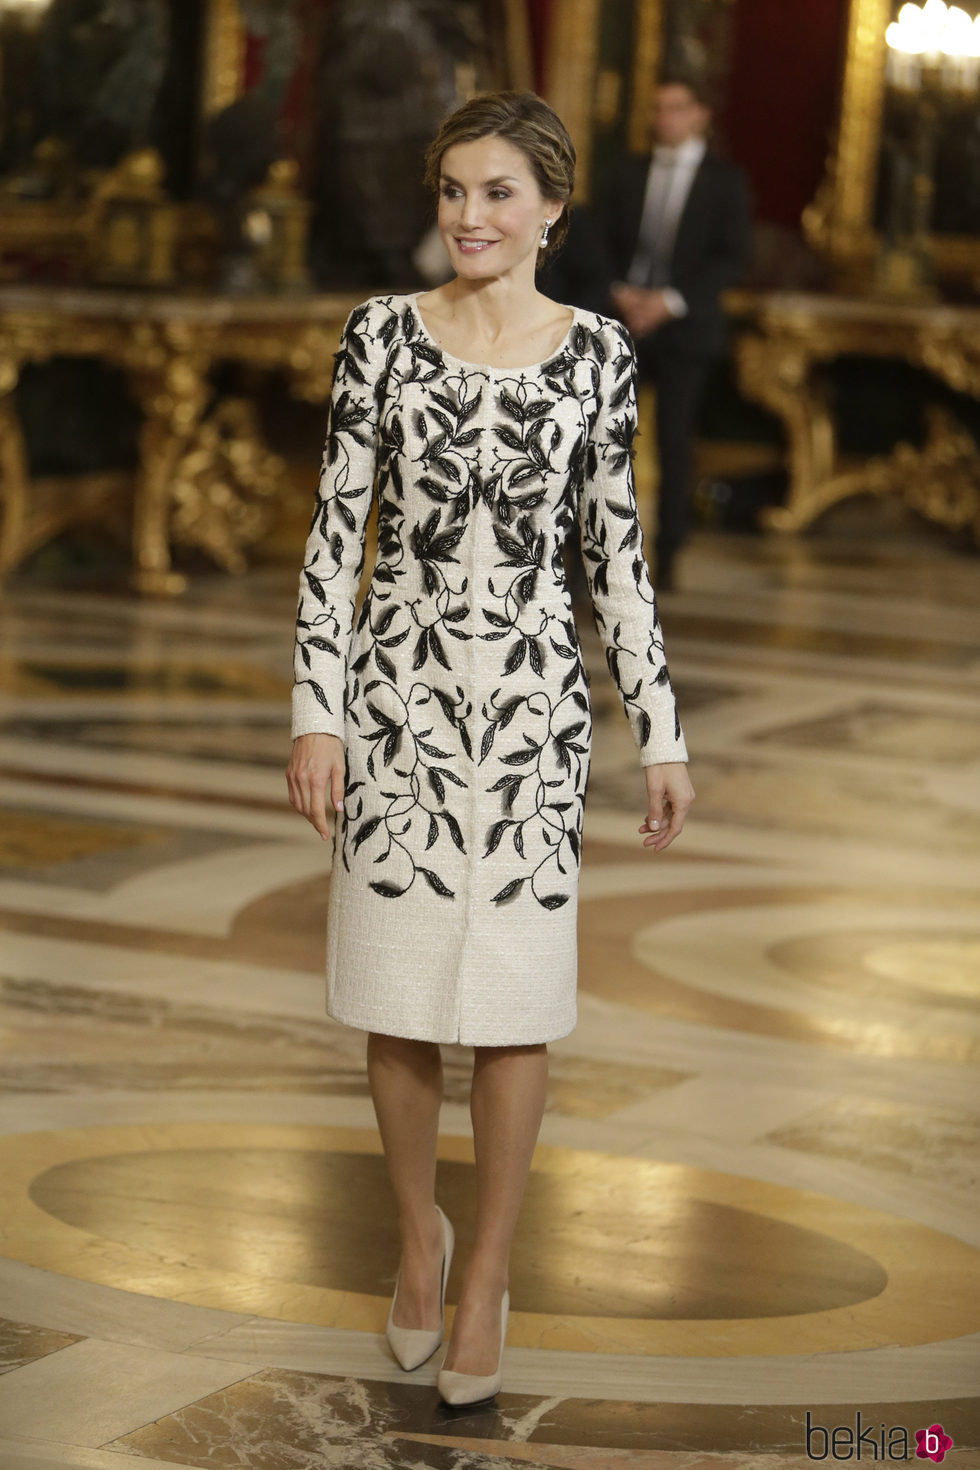 La Reina Letizia escoge un vestido de Felipe Varela en la recepción del Día de la Hispanidad 2016